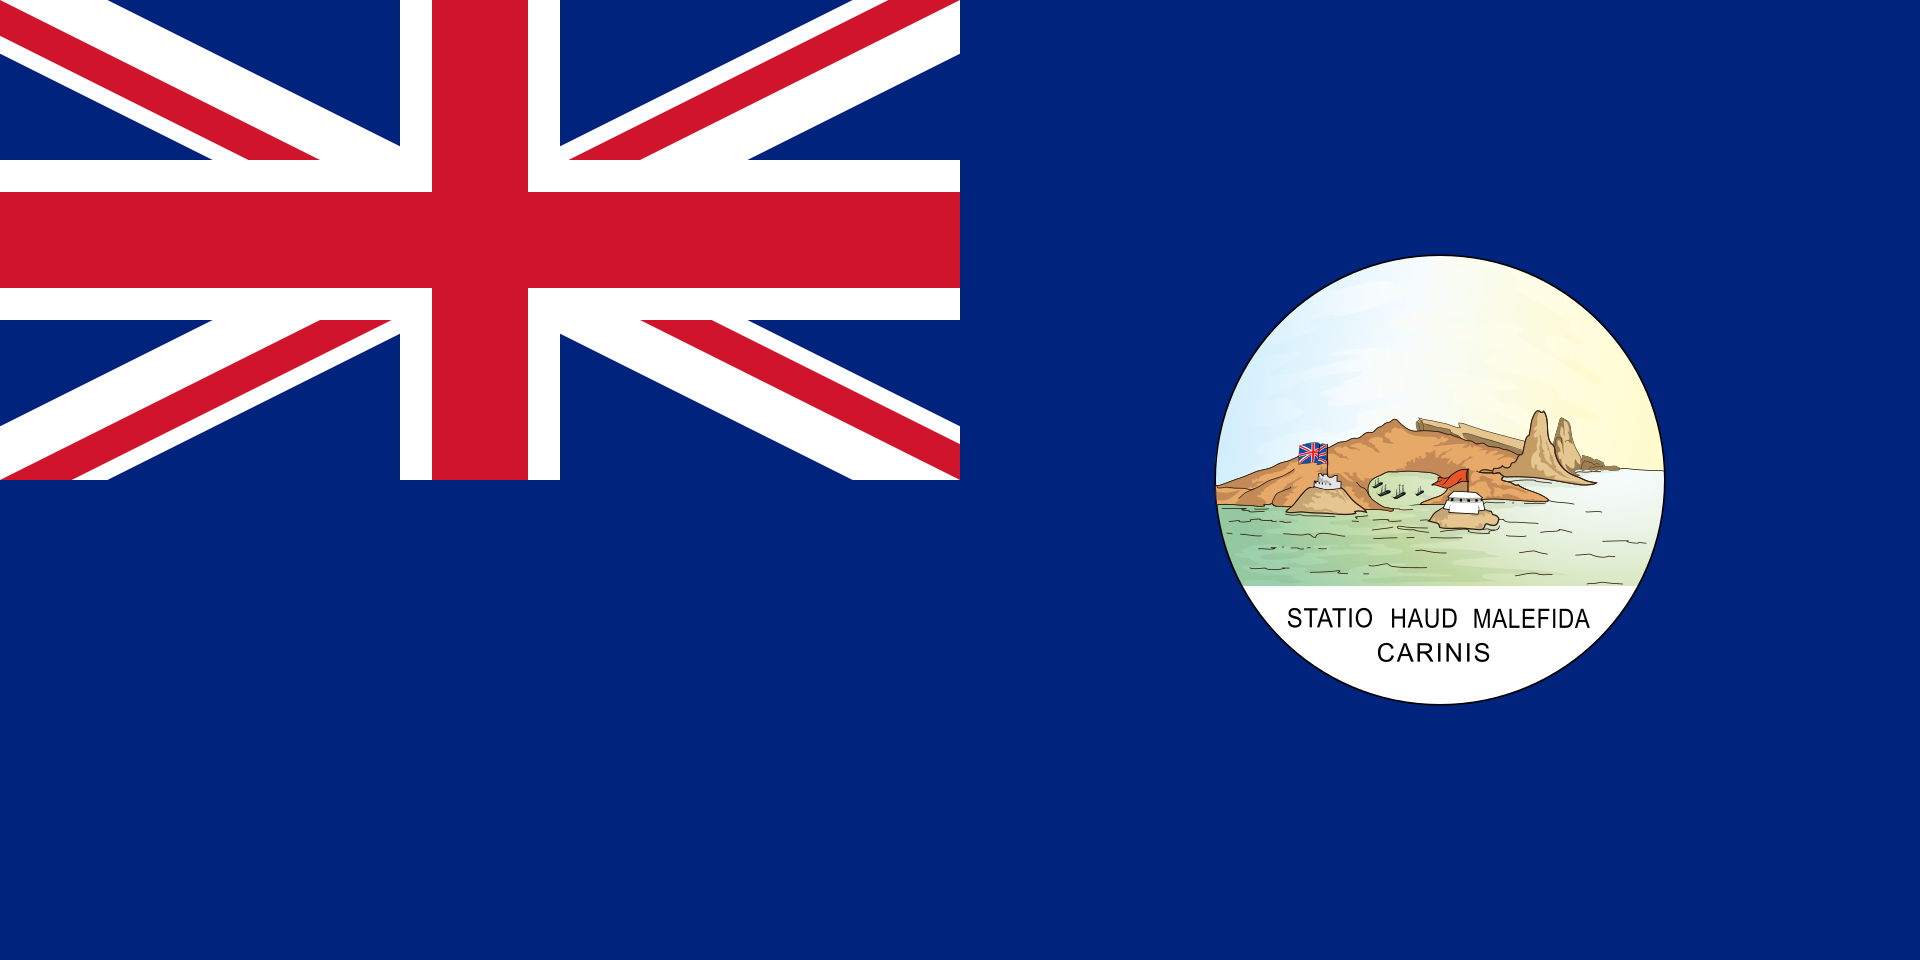 Bandera de Santa Lucia